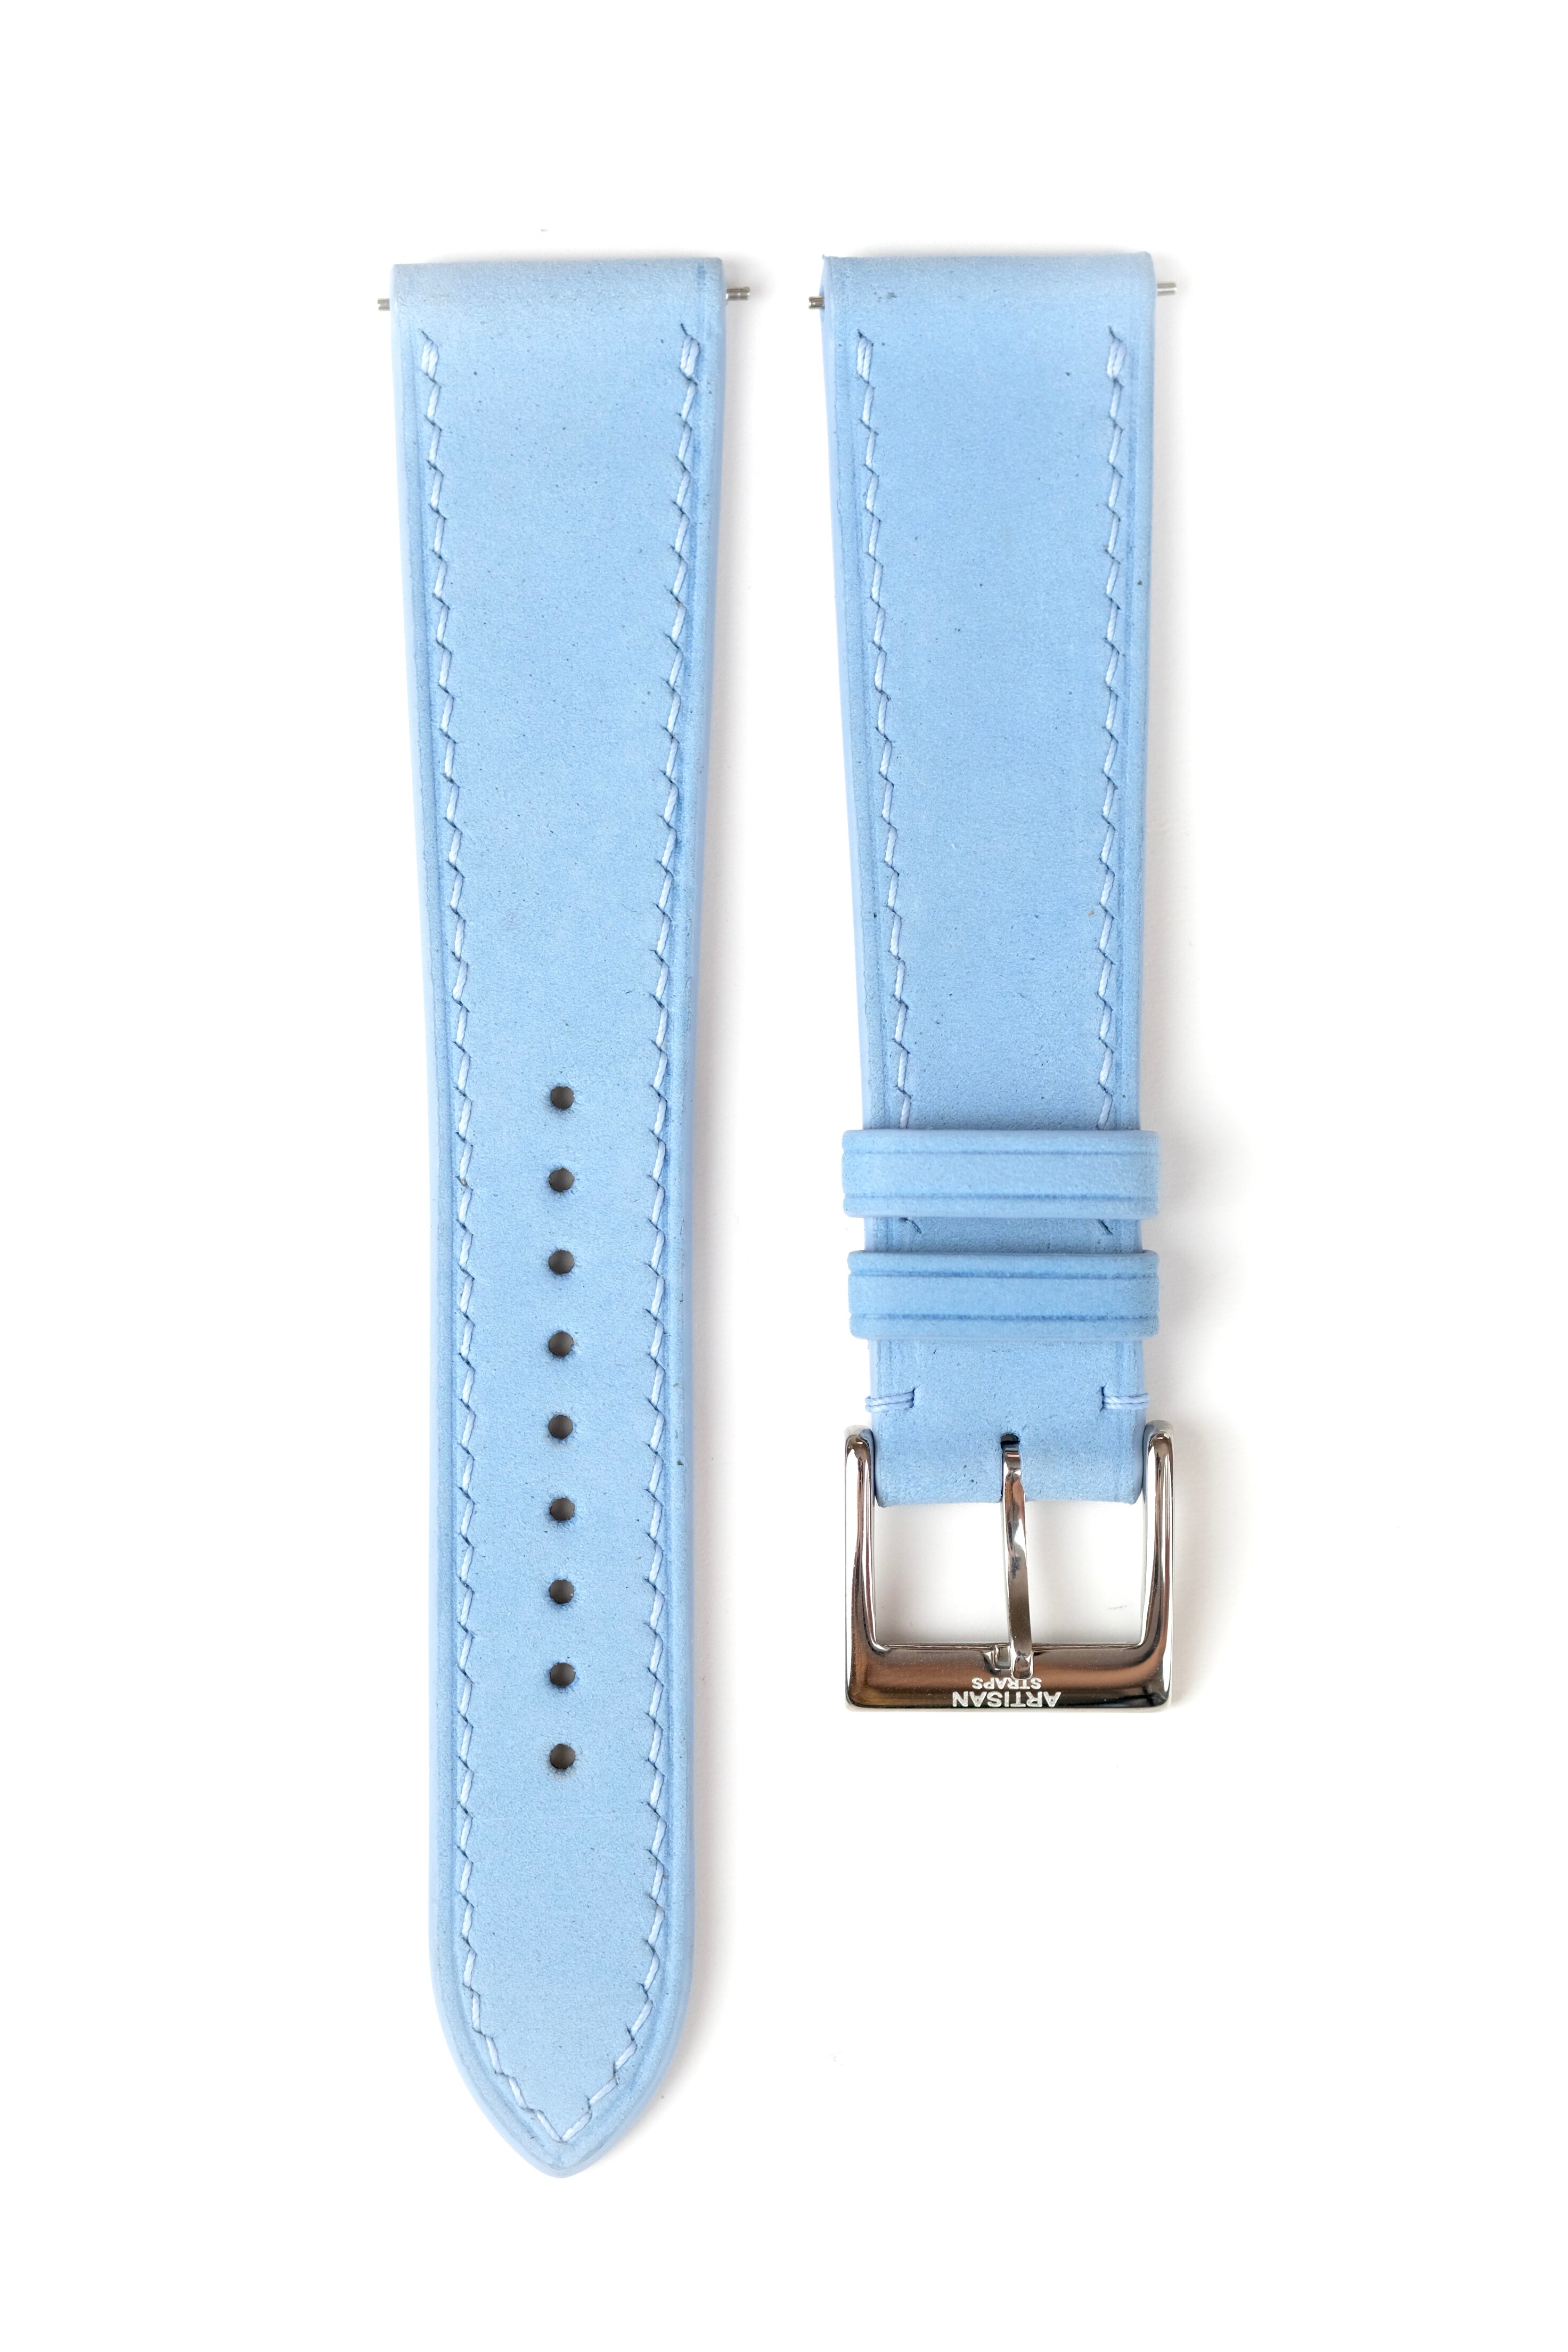 Lin Bleu Nubuck Leather Strap - Artisan Straps